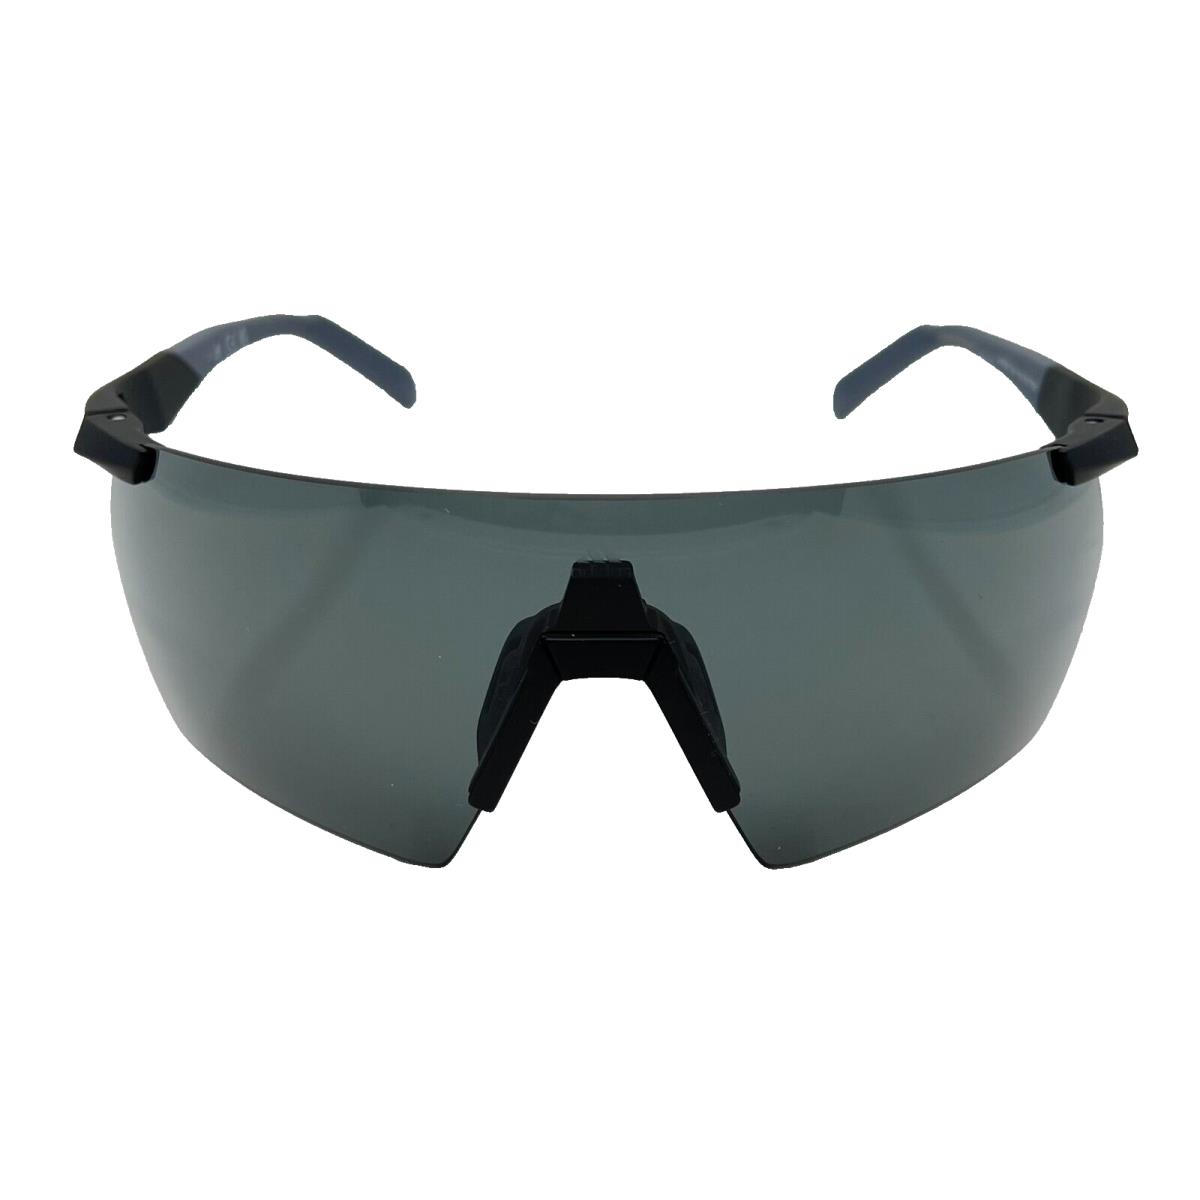 Adidas Sport SP0062 02A 138 - Black - Sunglasses Case Lens